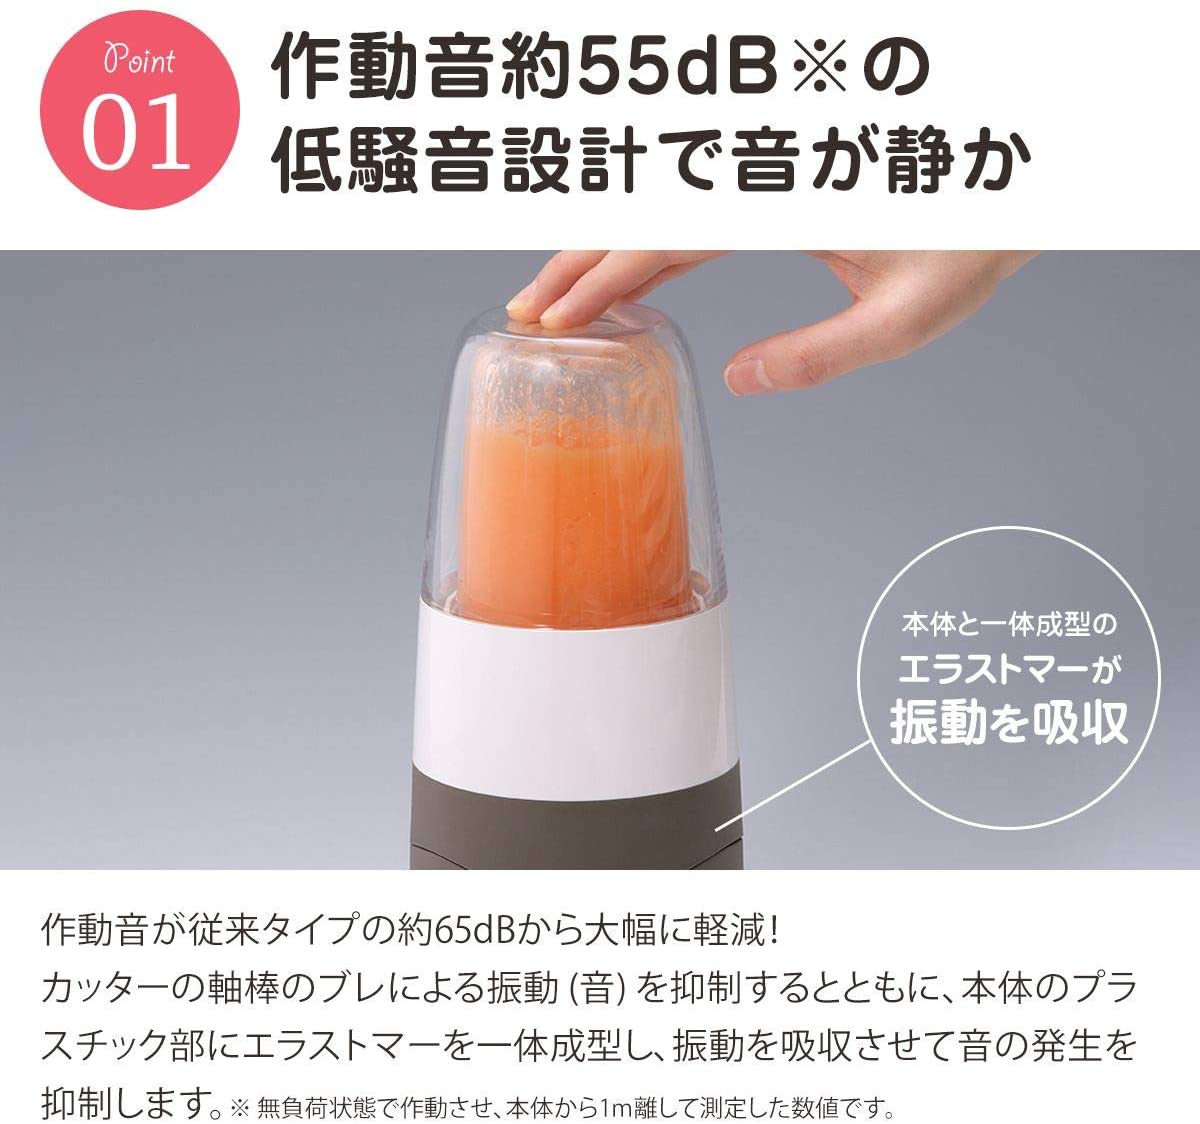 岩谷産業(Iwatani) サイレントミルサー IFM-S30Gの商品画像3 